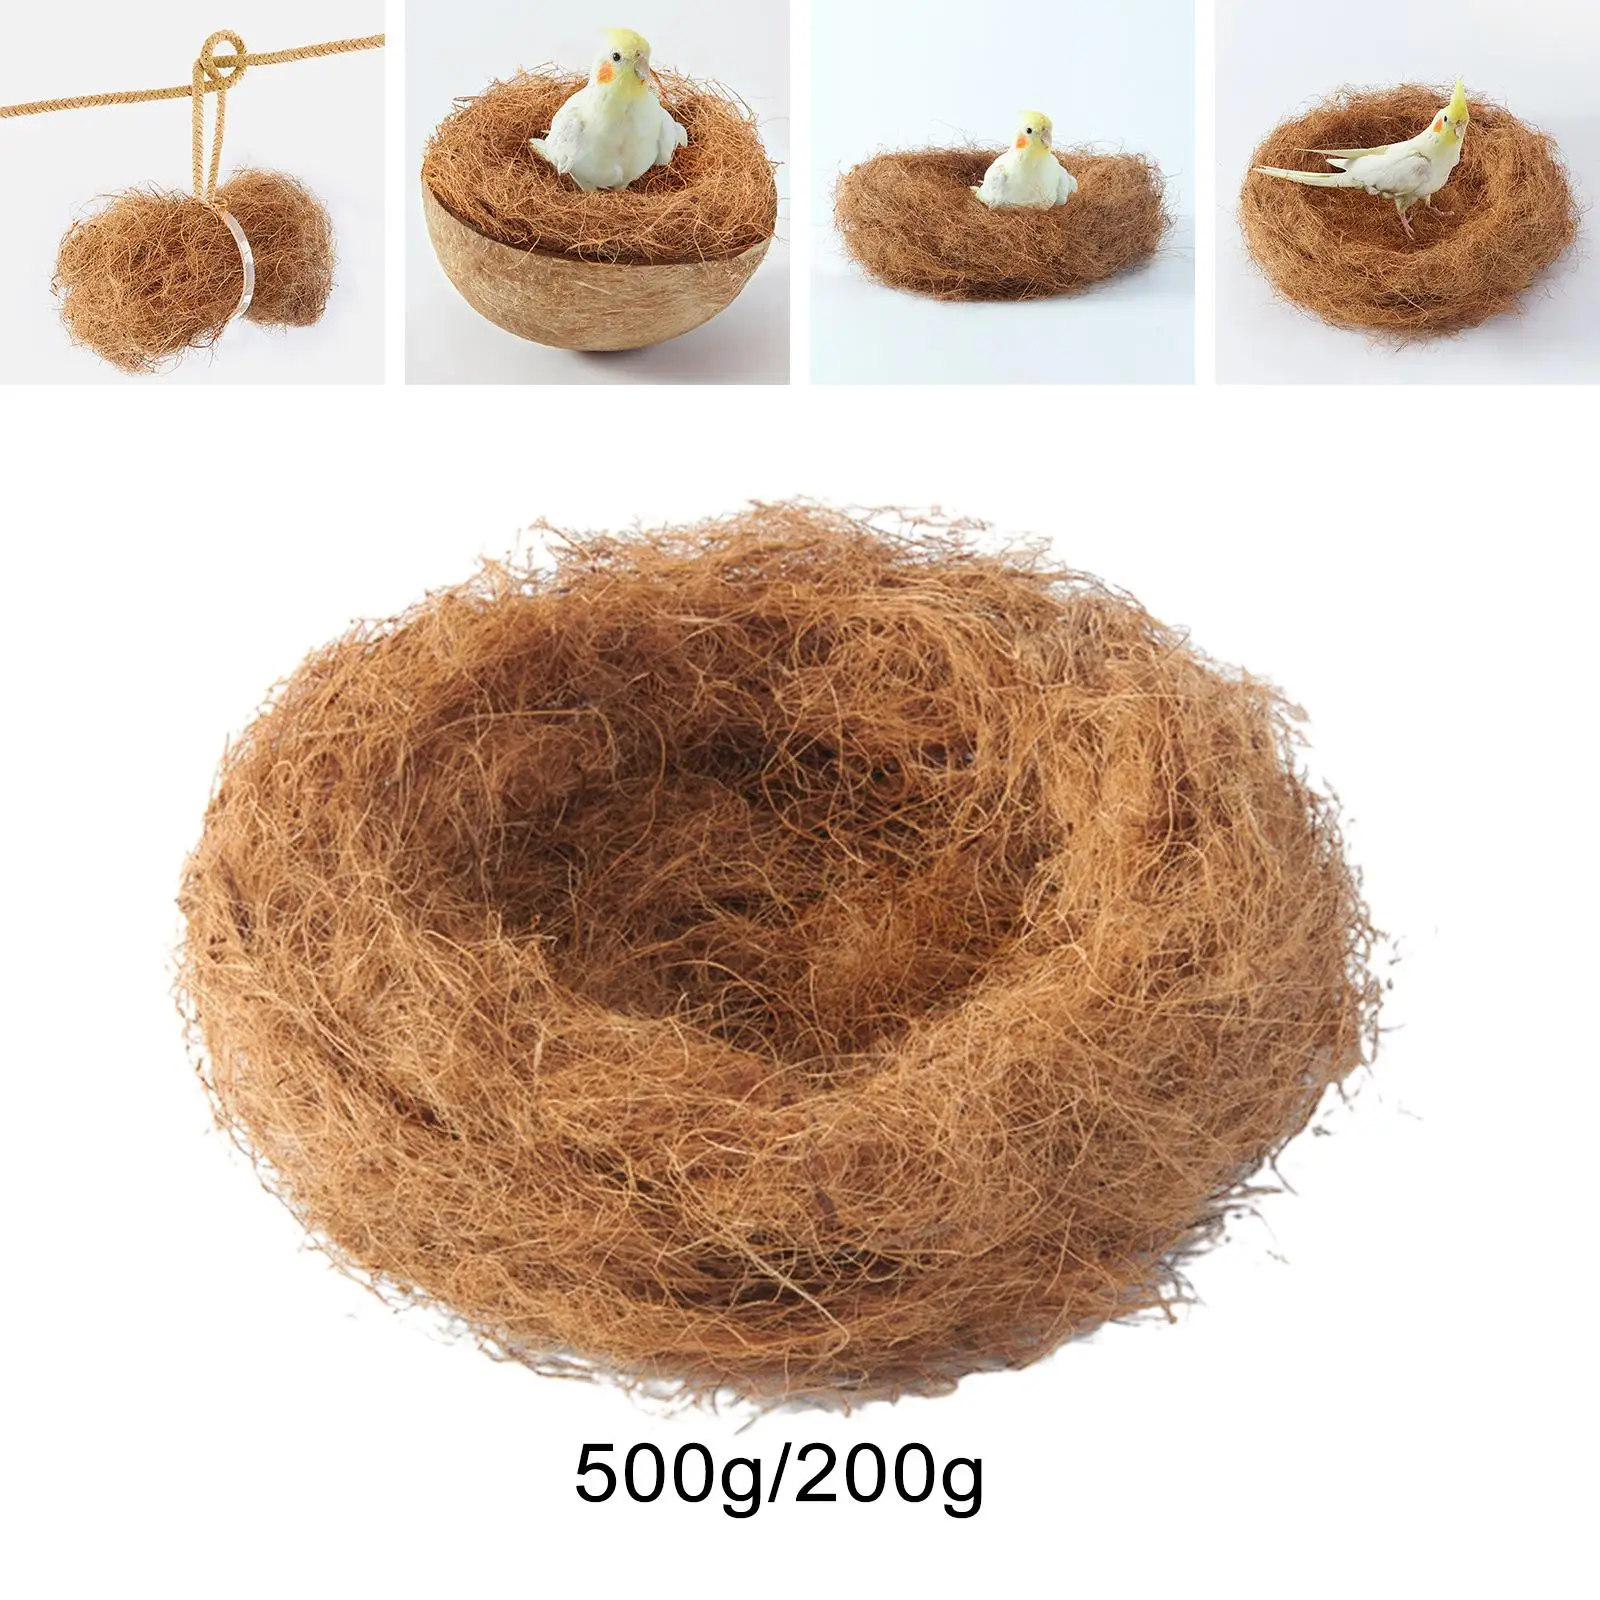 Coconut Fiber for Bird Nest Nest Building for Indoor Outdoor